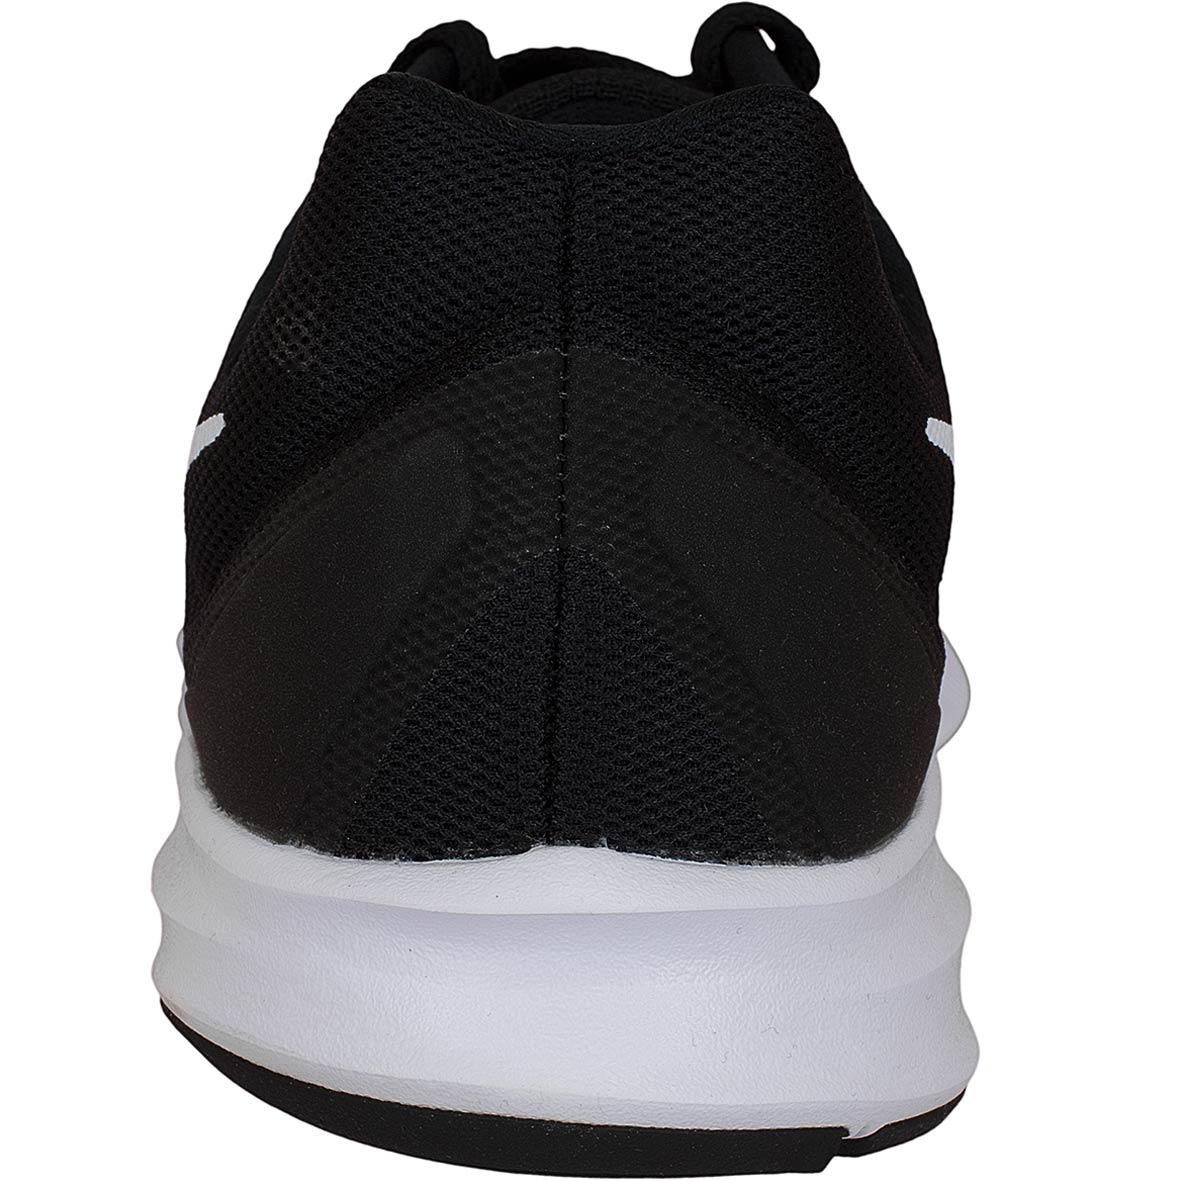 ☆ Nike Sneaker Downshifter 7 schwarz/weiß - hier bestellen!